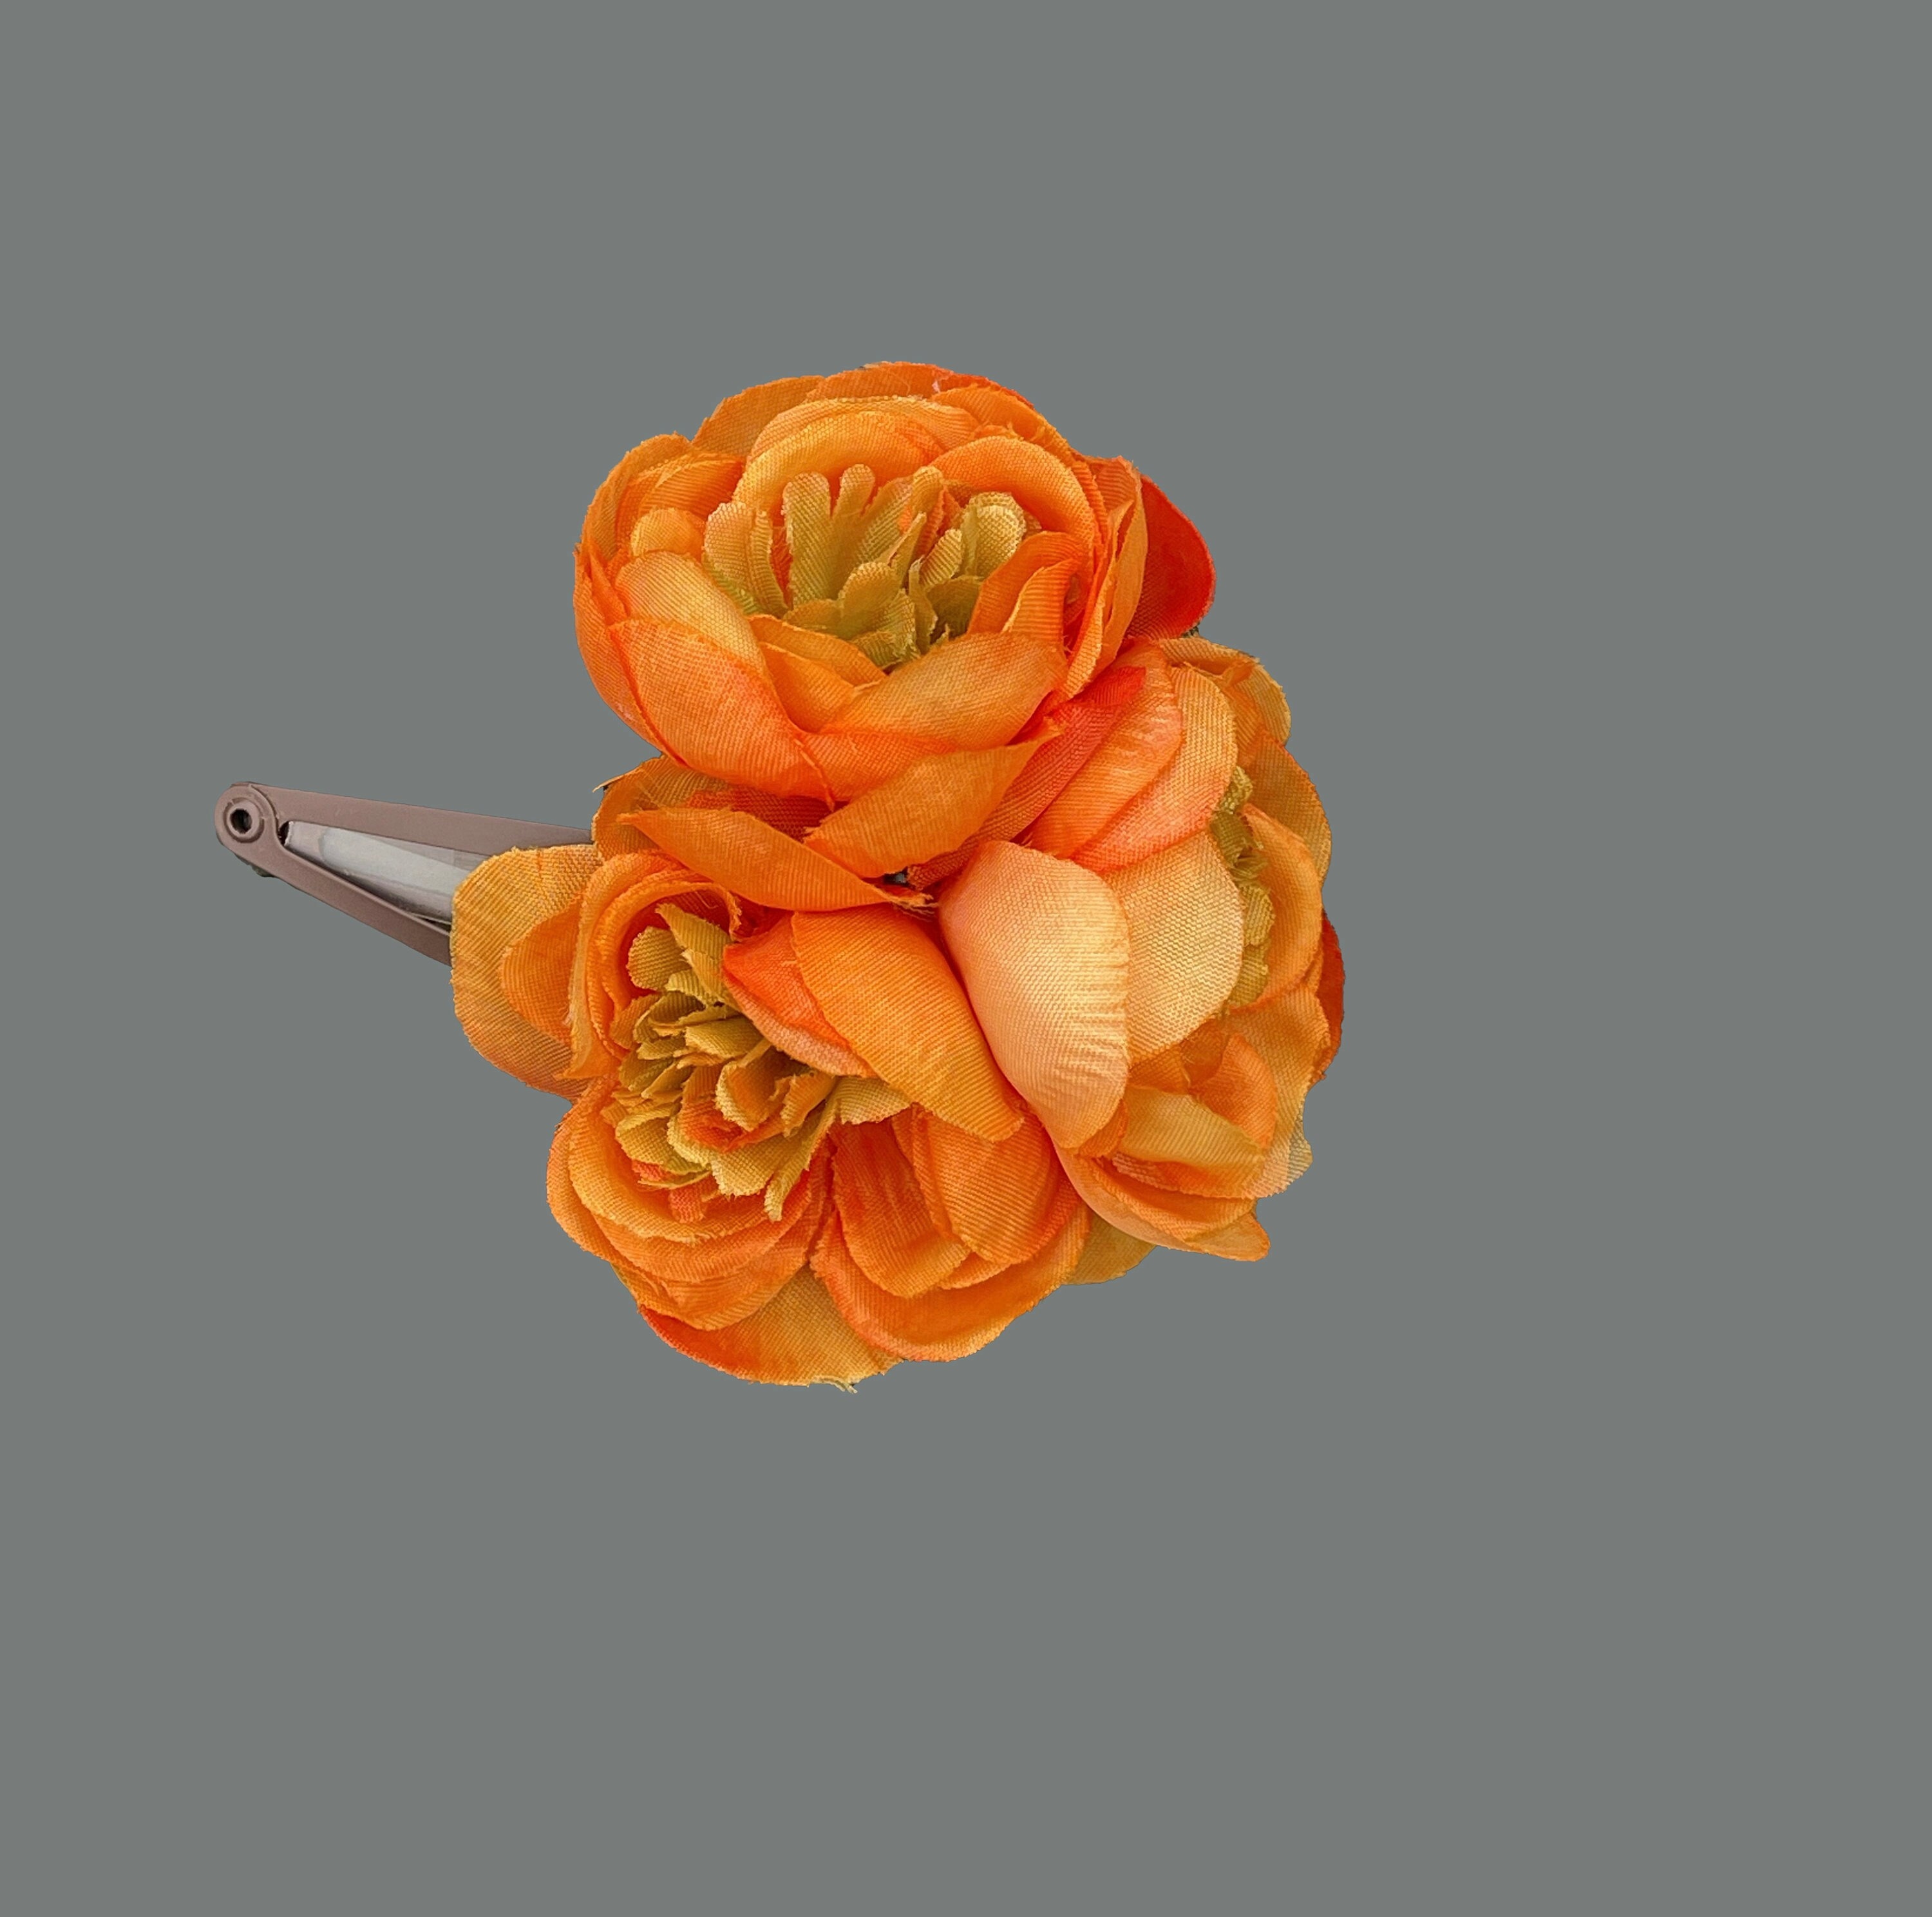 Efavormart 4 Pack | 12 Artificial Blush / Rose Gold Mini Ranunculus Silk  Flower Arrangements, Faux Buttercup Floral Bouquets